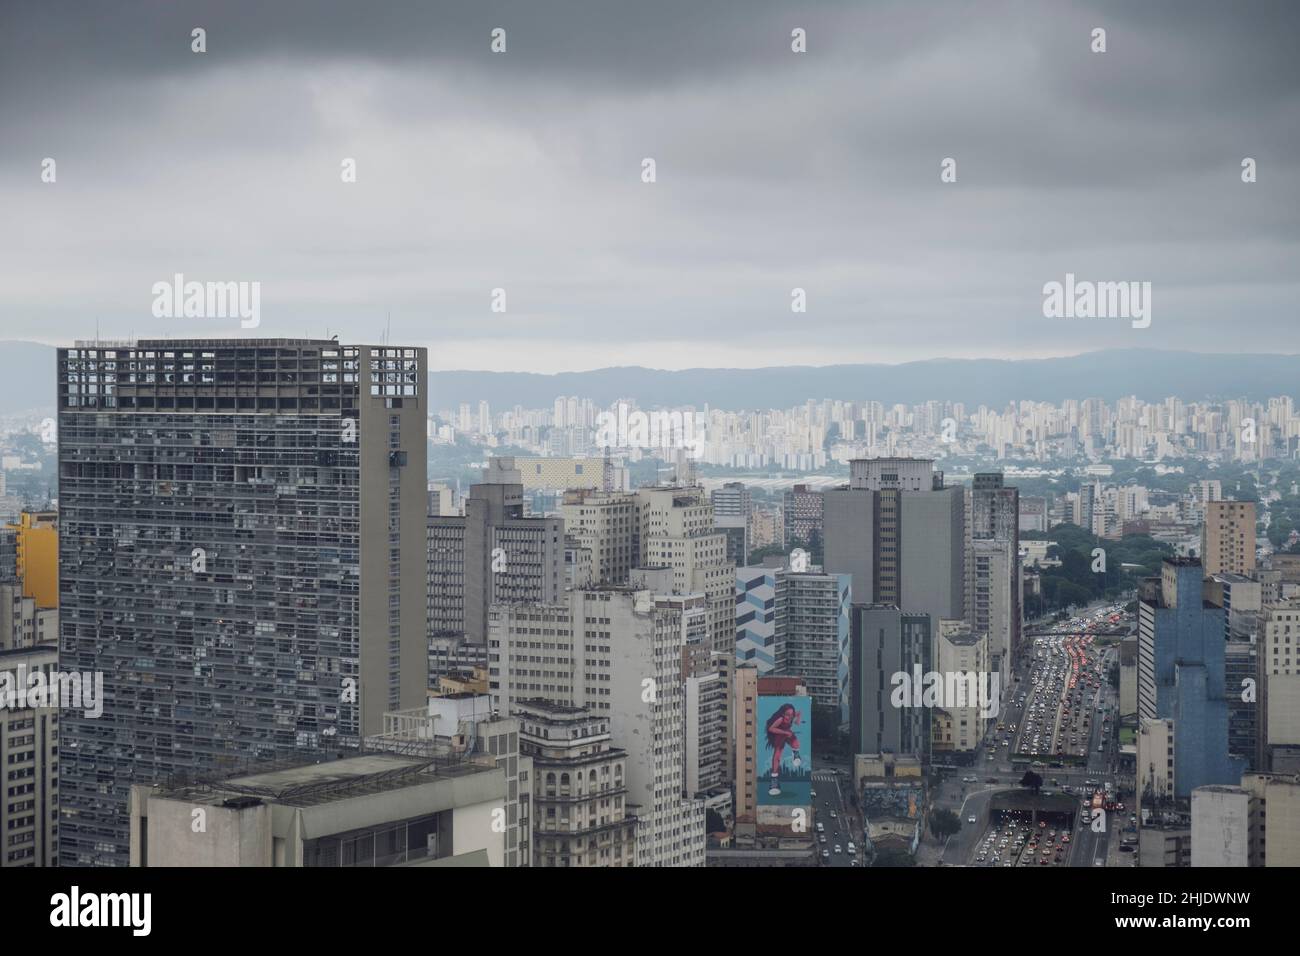 Brasil, São Paulo. Horizonte urbano de edificios comerciales y residenciales de gran altura en el distrito del centro de la ciudad. La ciudad más grande de las Américas. Foto de stock